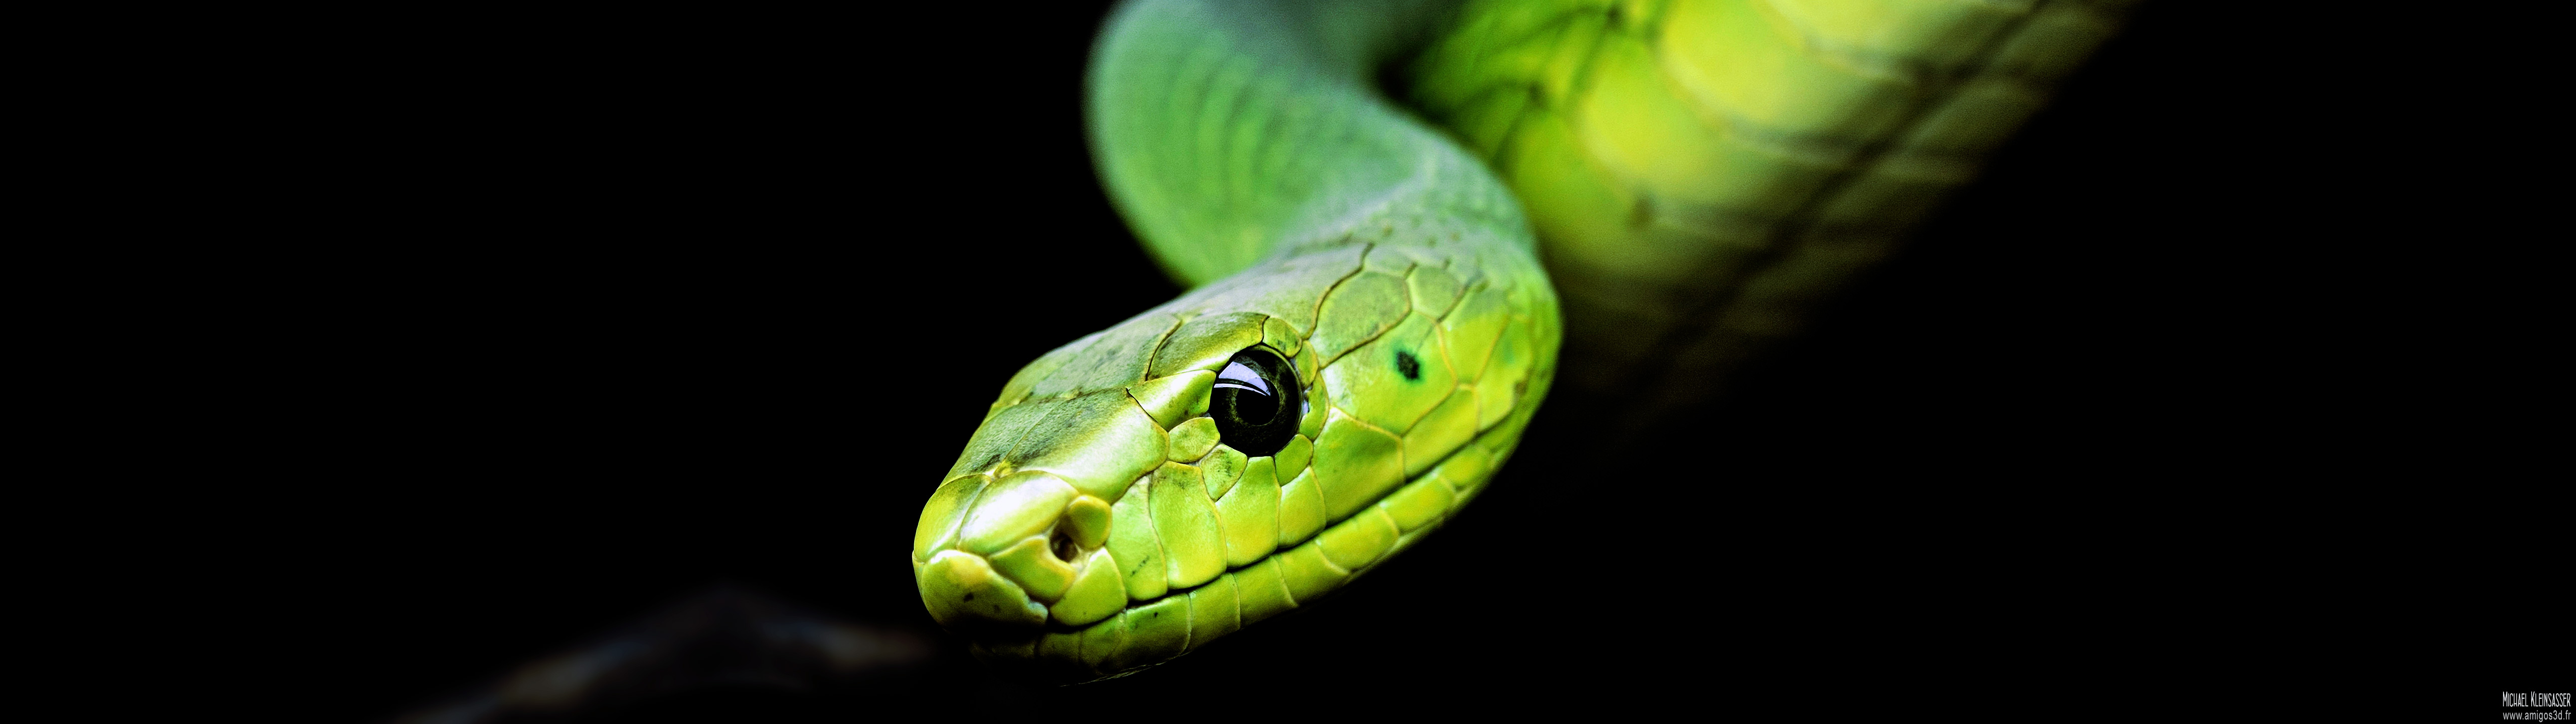 214-snake